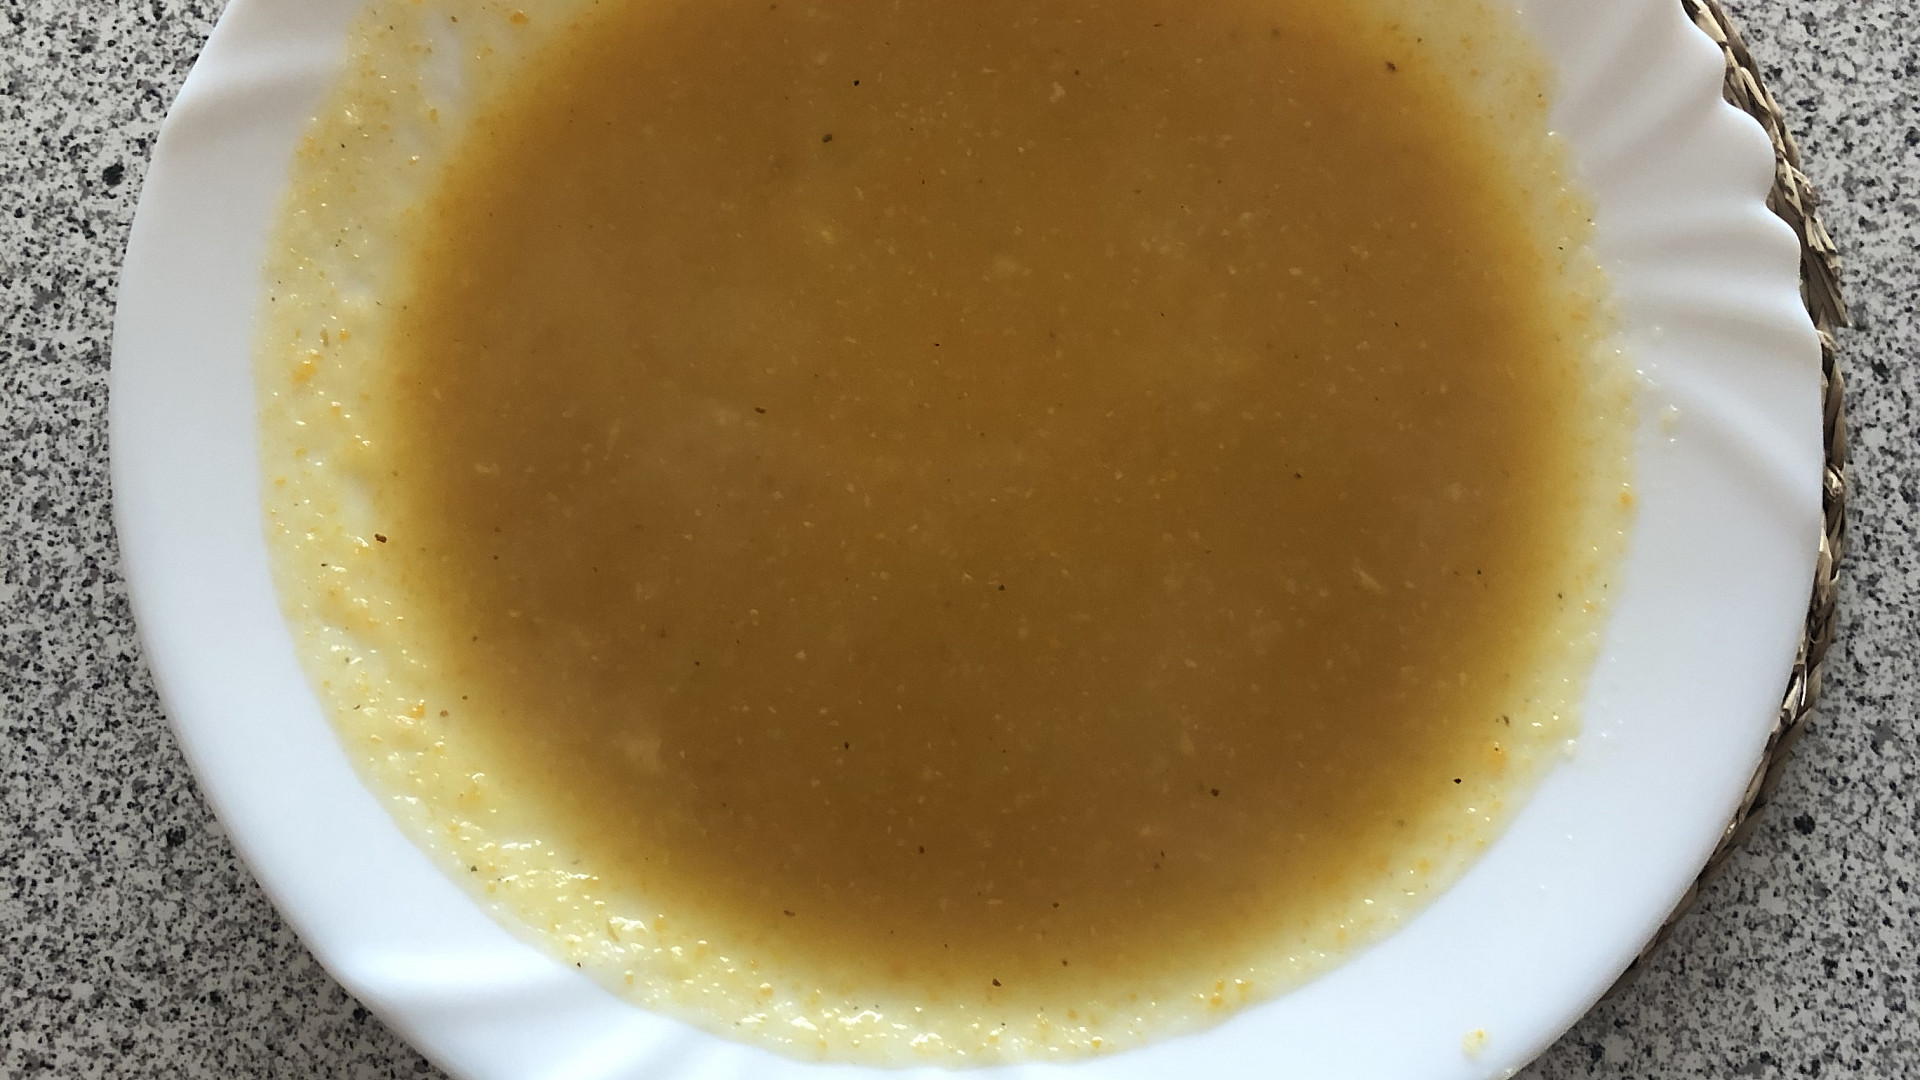 Celerovo - mrkvová polévka